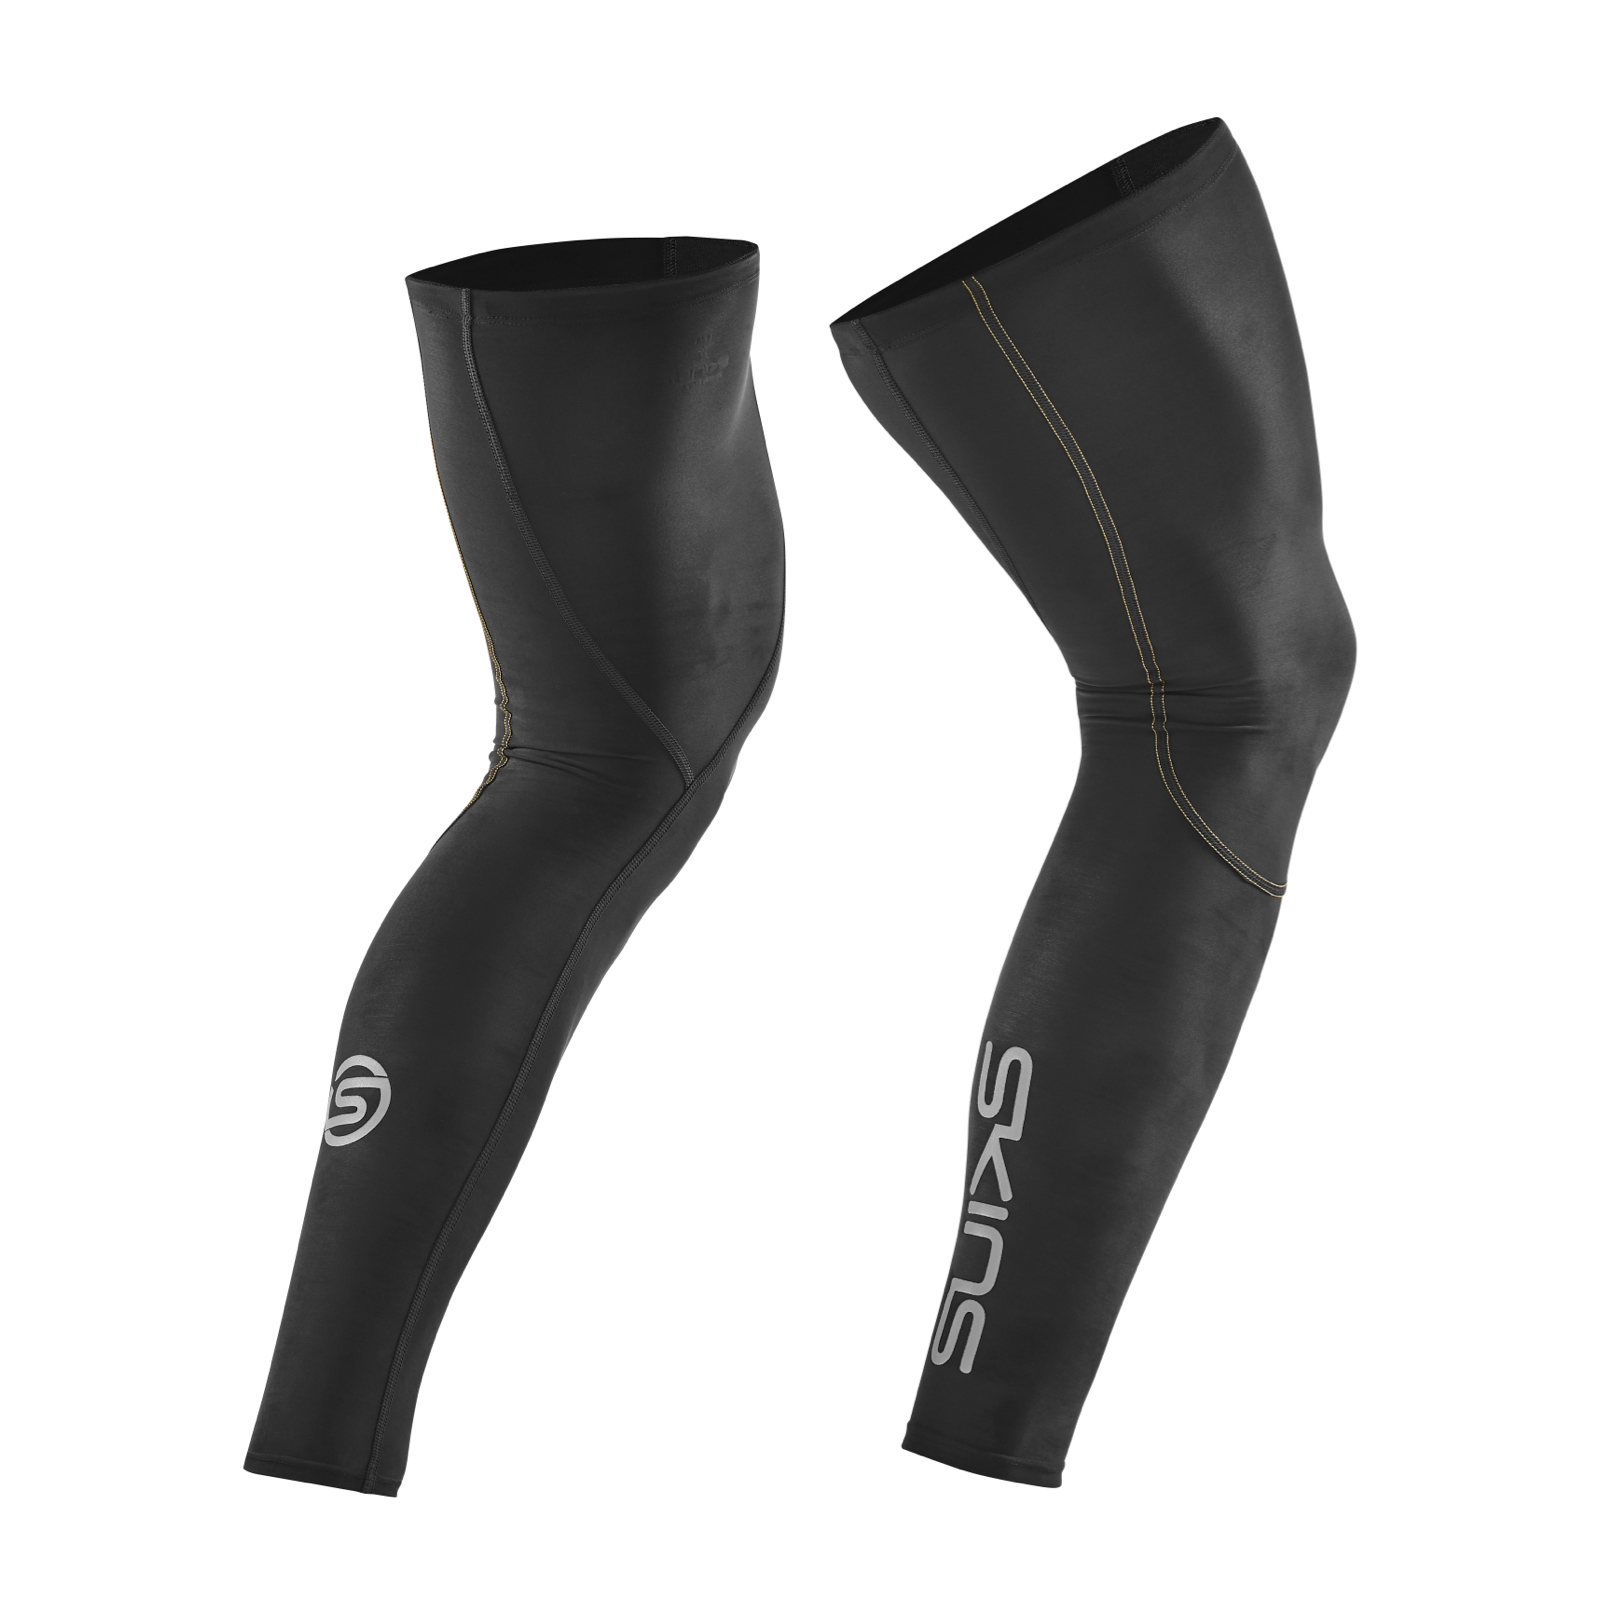 SKINS Essentials Unisex Sleeves, Black, Medium 